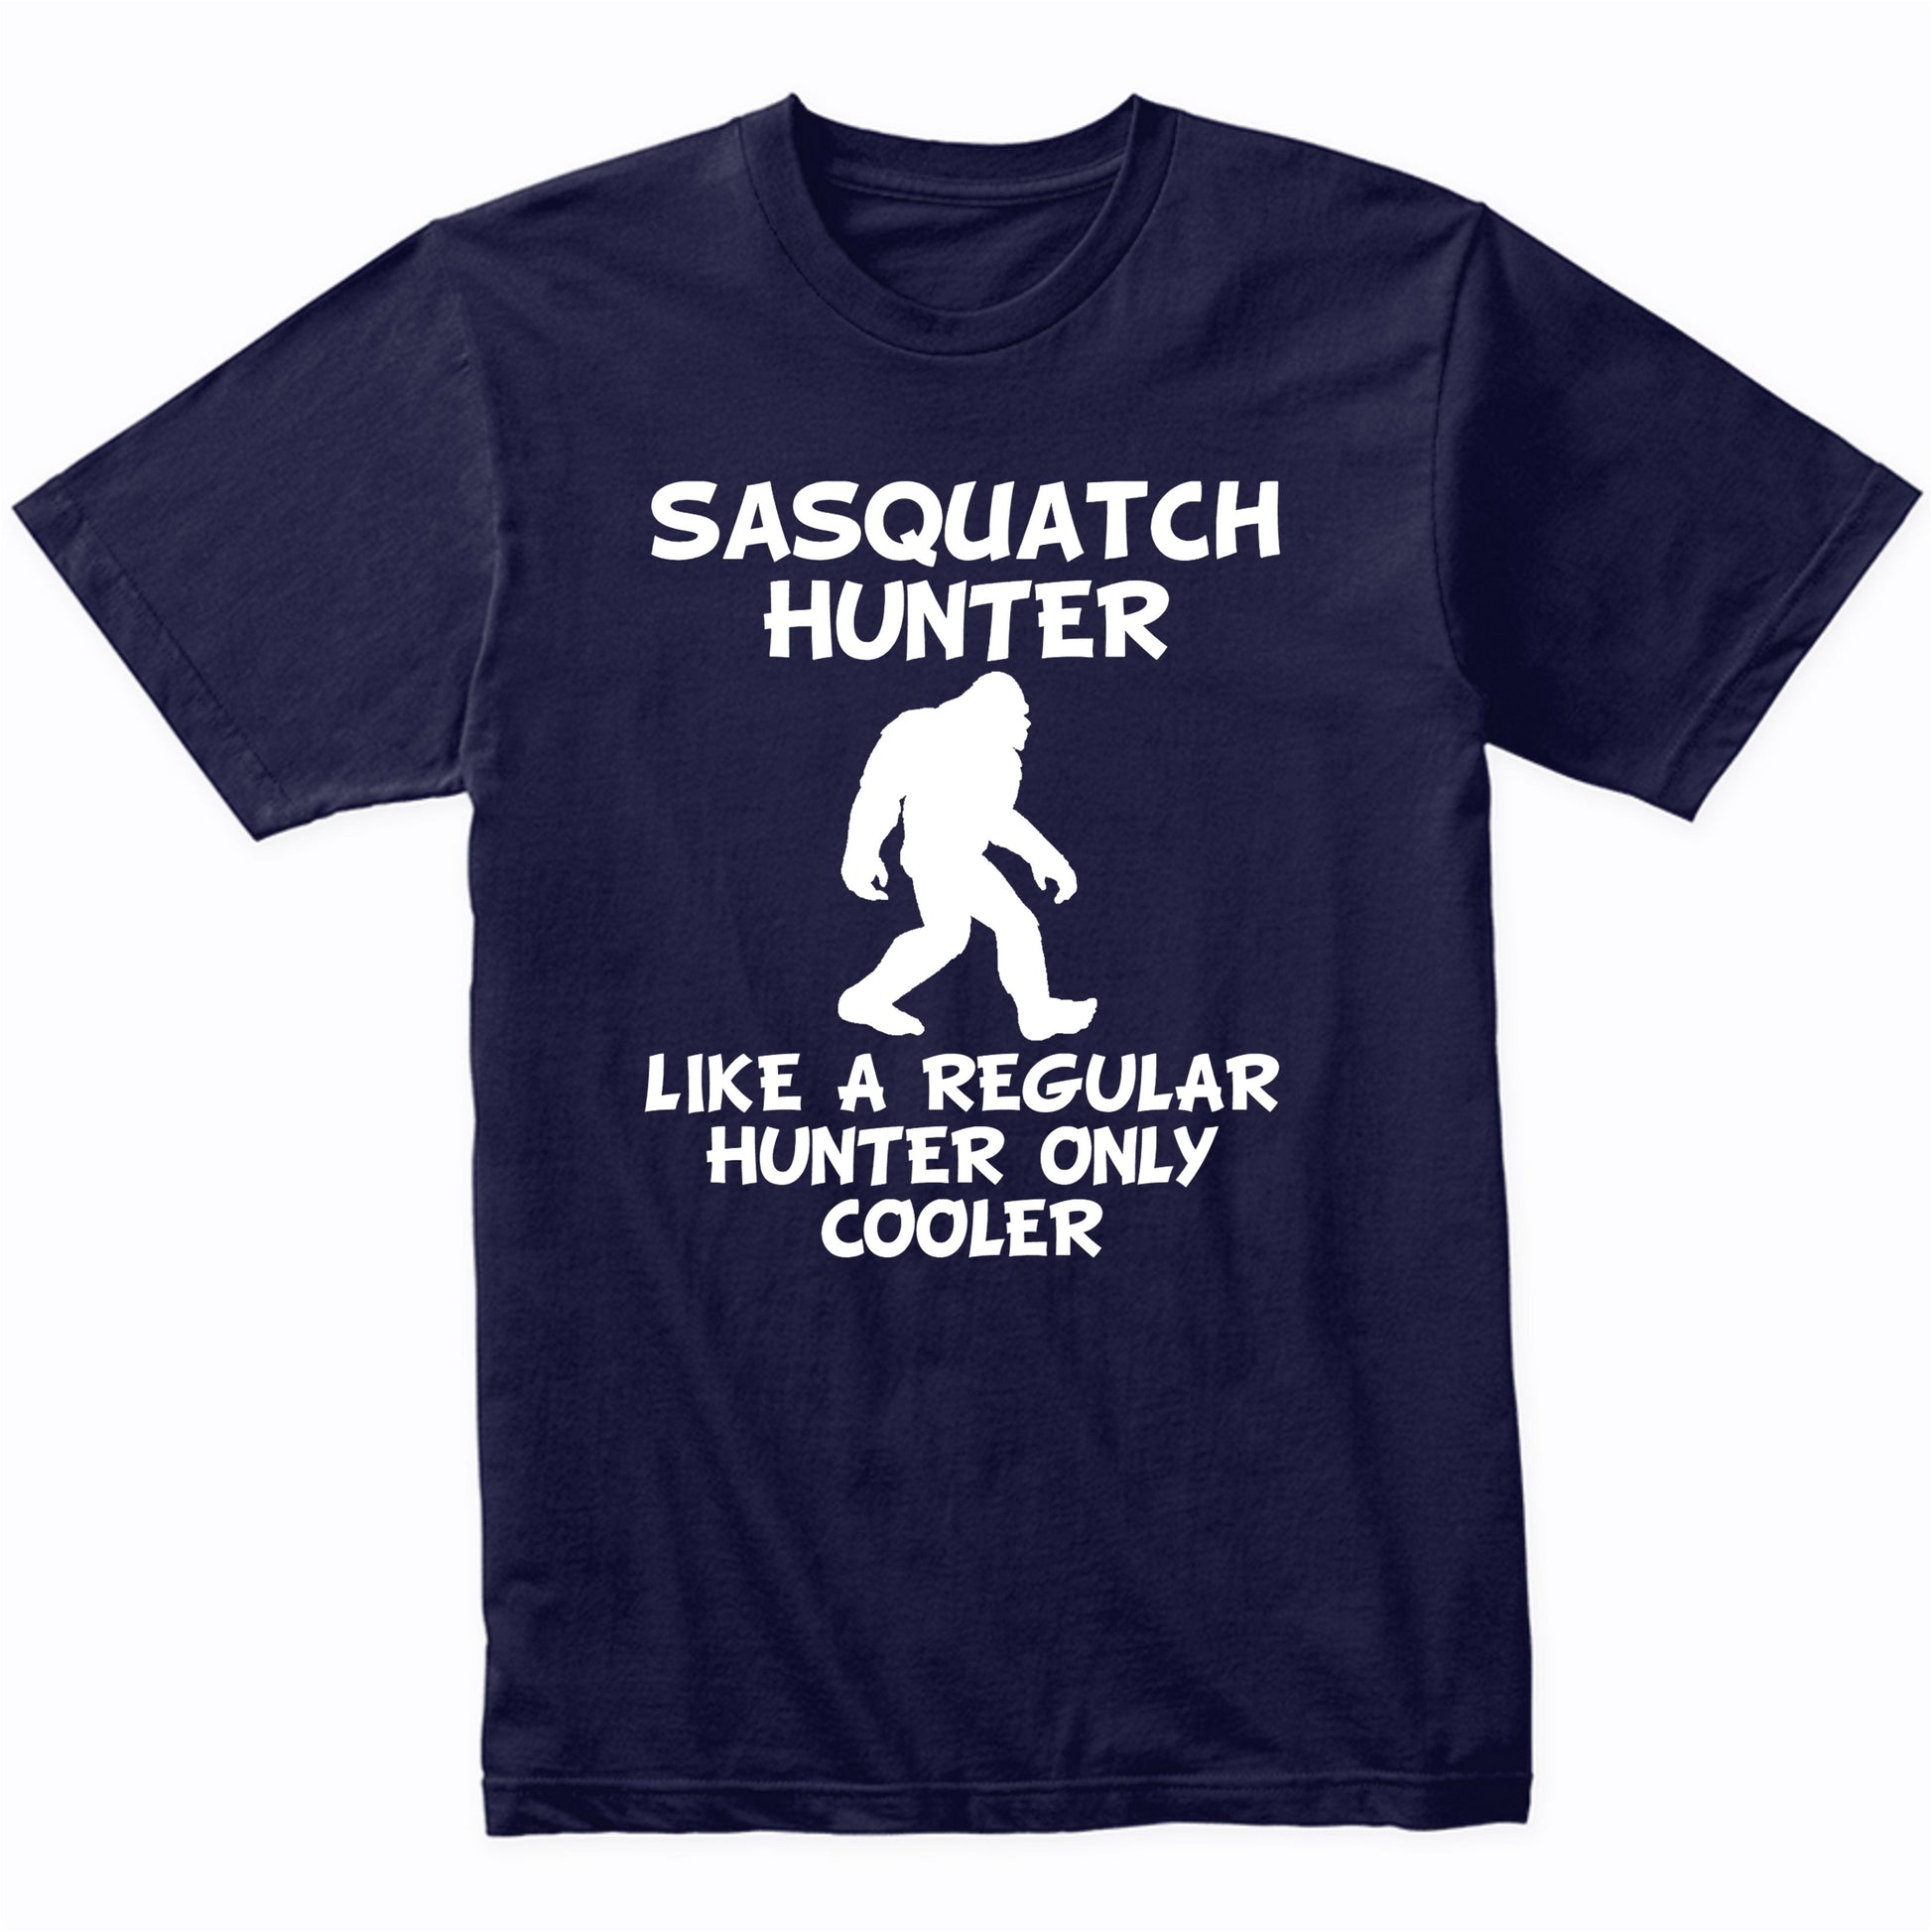 Sasquatch Hunter Shirt Like A Regular Hunter Only Cooler